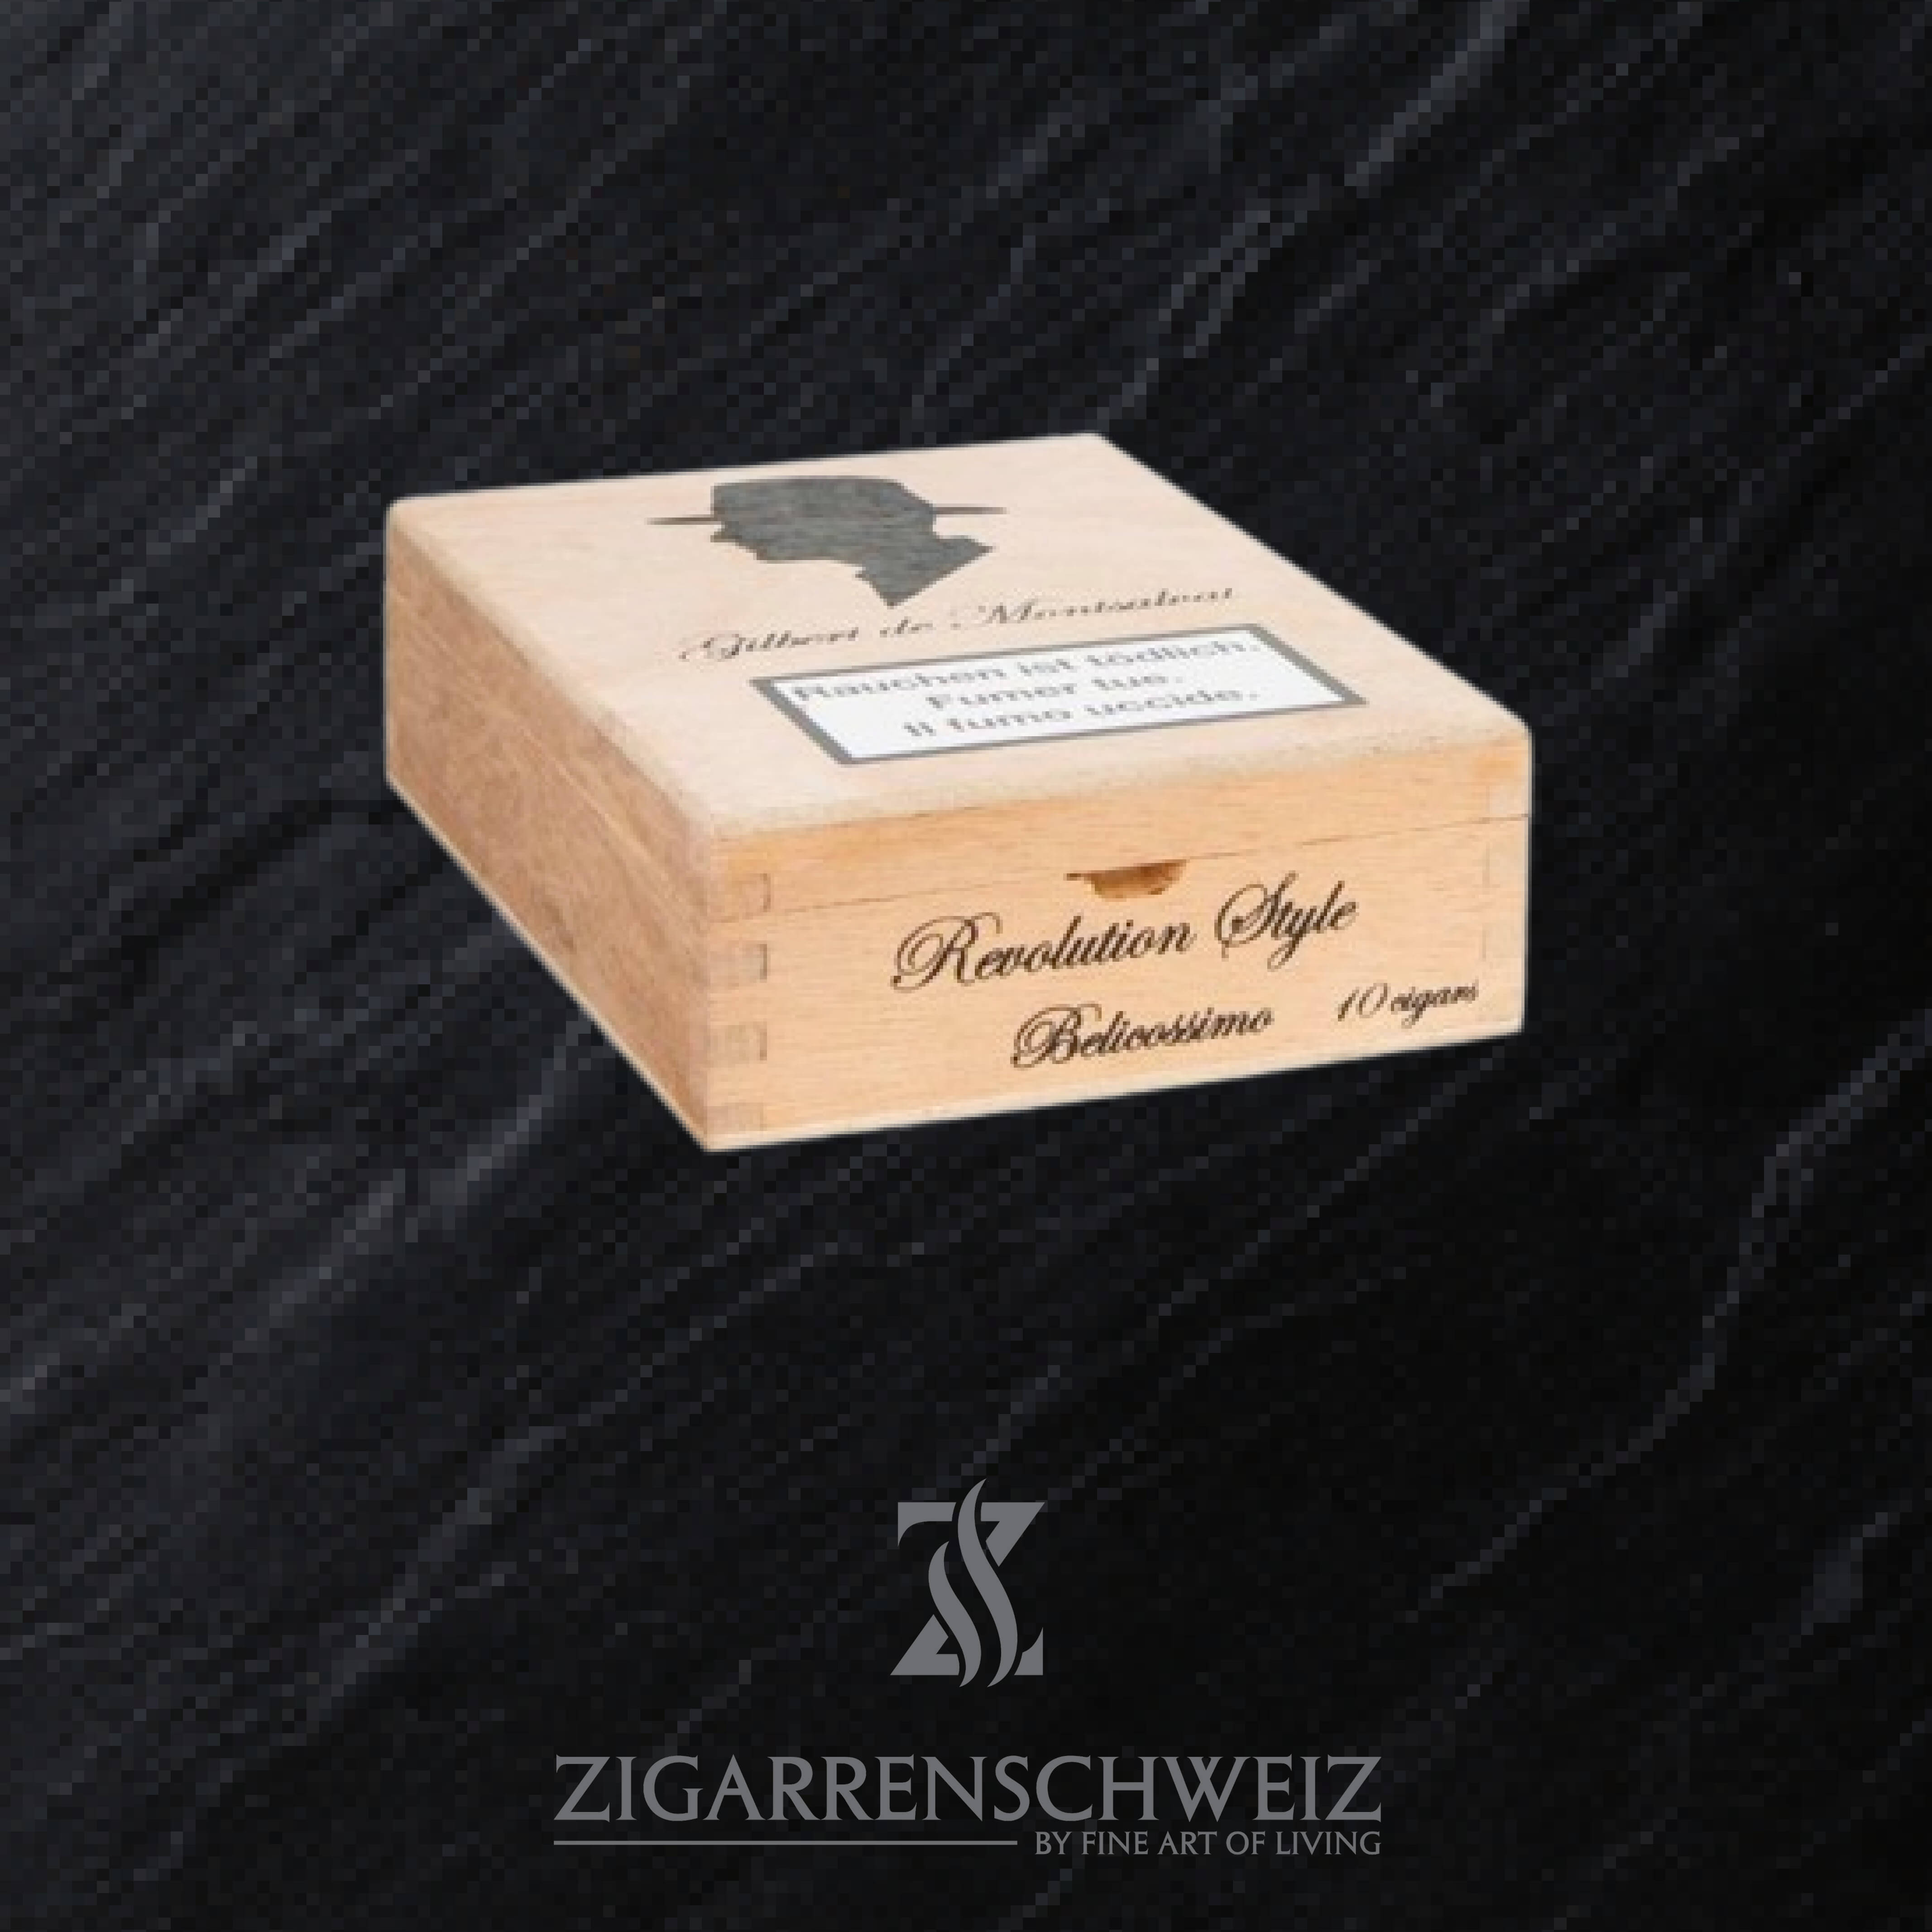 Gilbert de Montsalvat Revolution Style Belicolissimo Zigarrenkiste geschlossen